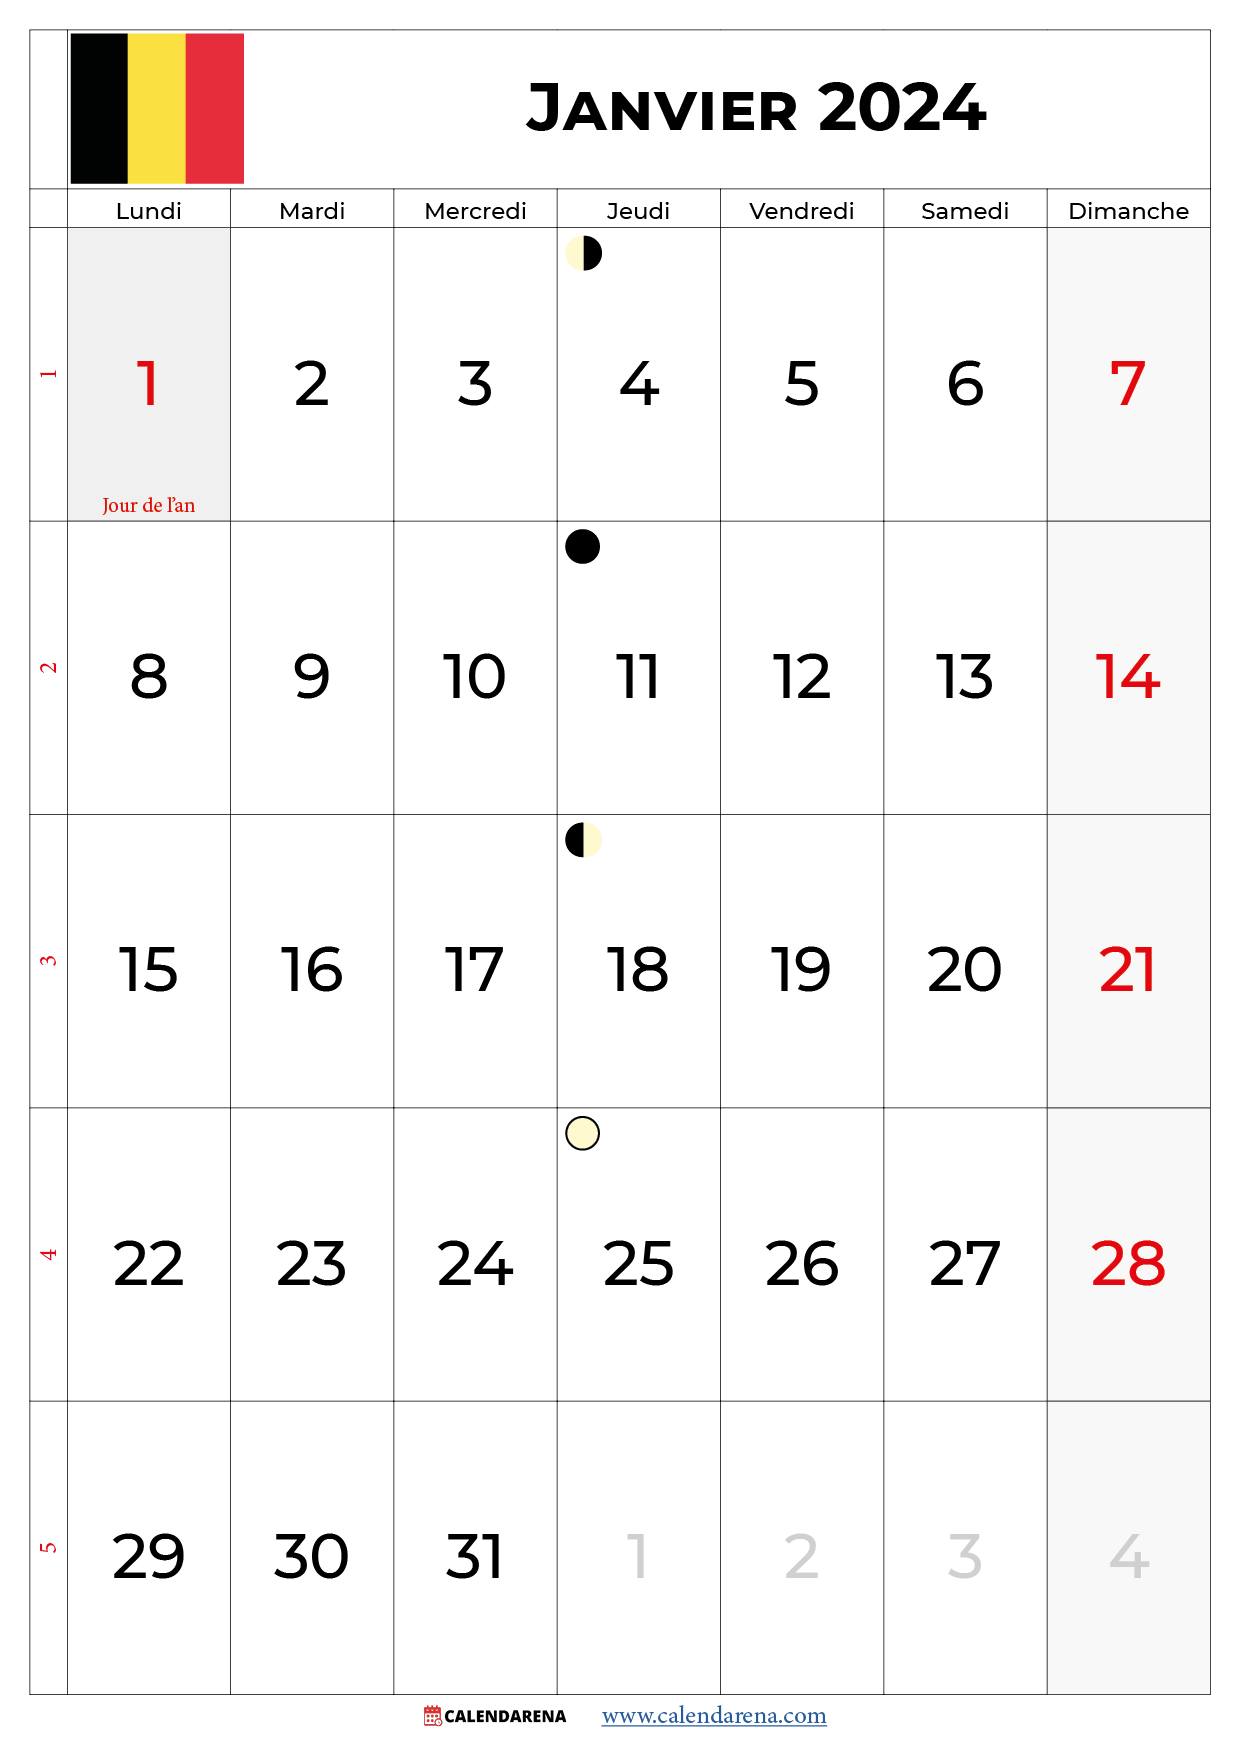 calendrier lunaire janvier 2024 belgique